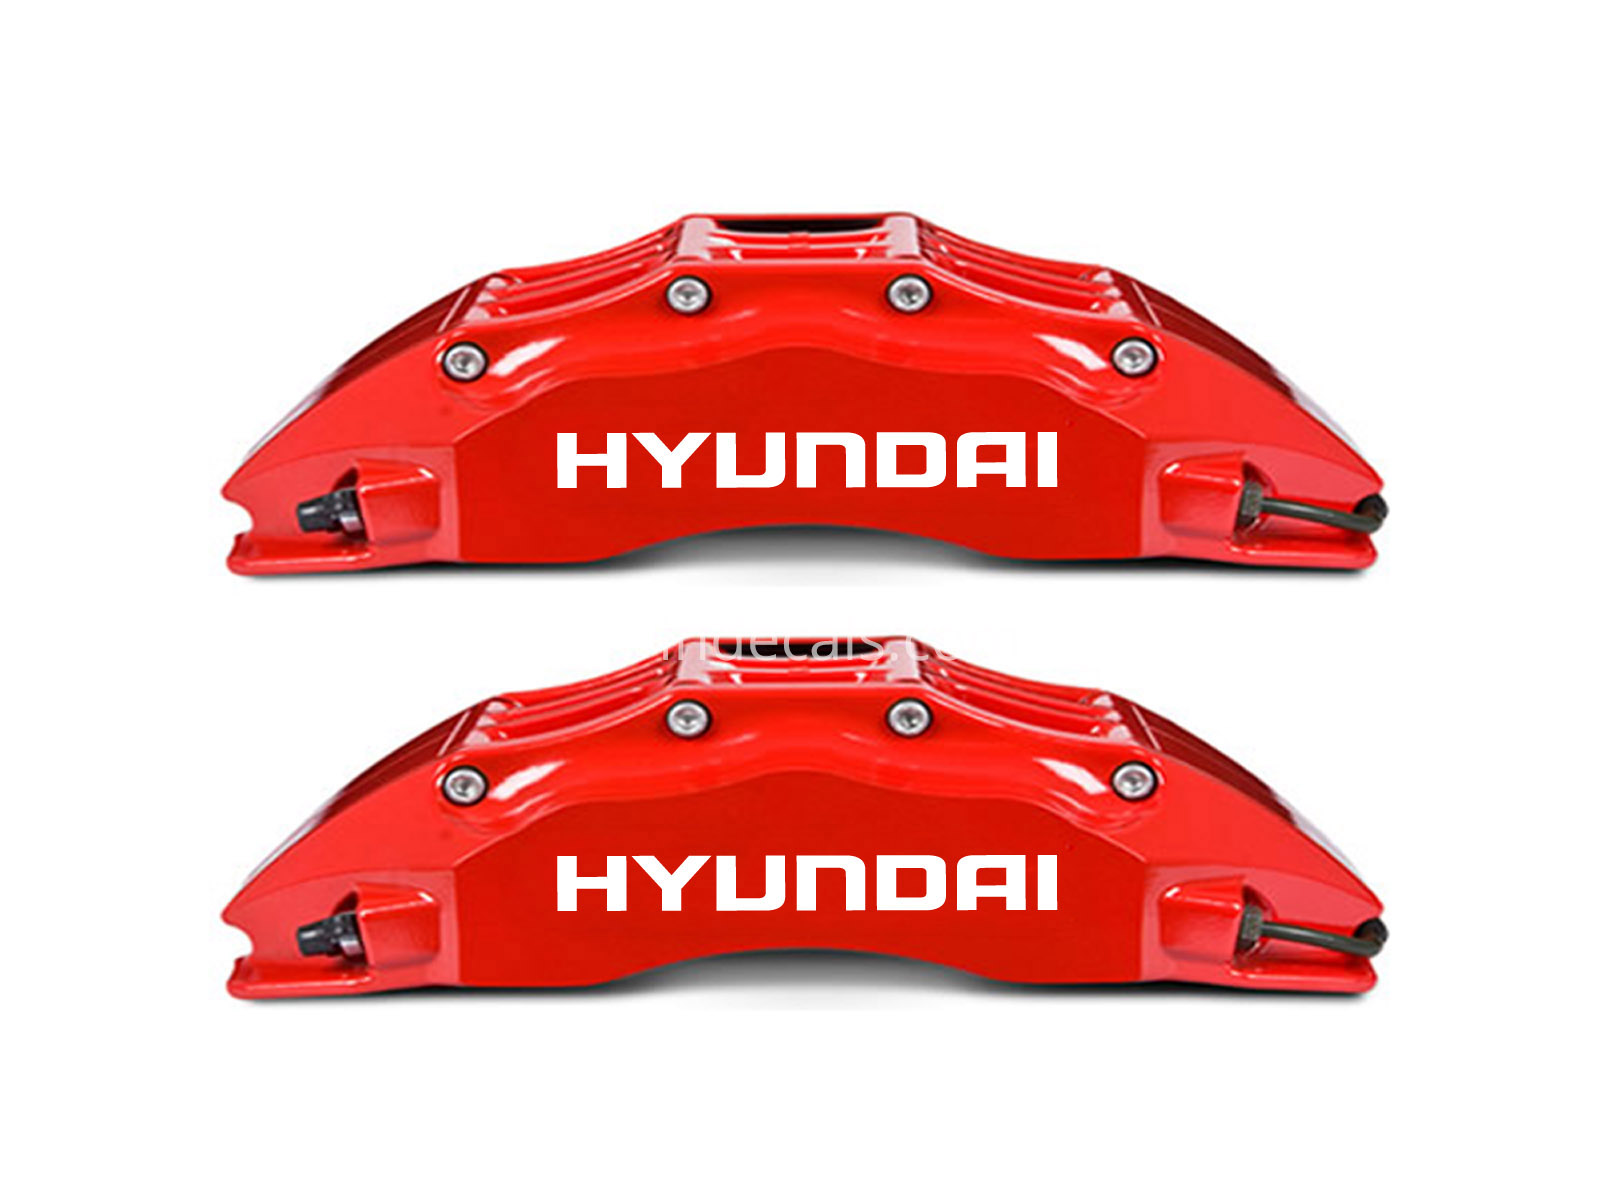 6 x Hyundai Stickers for Brakes - White